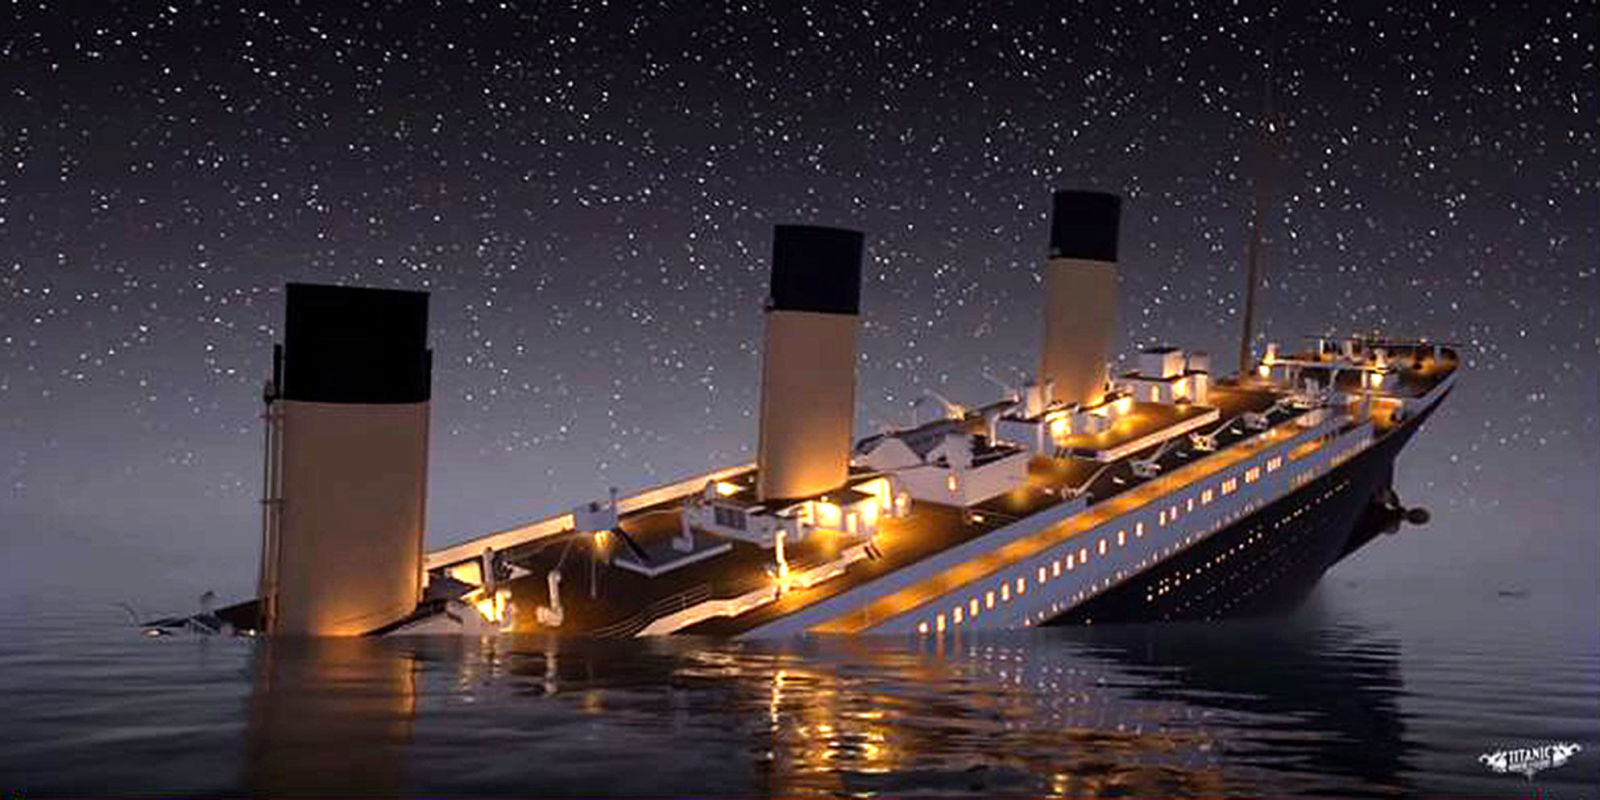 Chìa khóa tủ của tàu Titanic có giá 1,4 tỷ đồng - 1